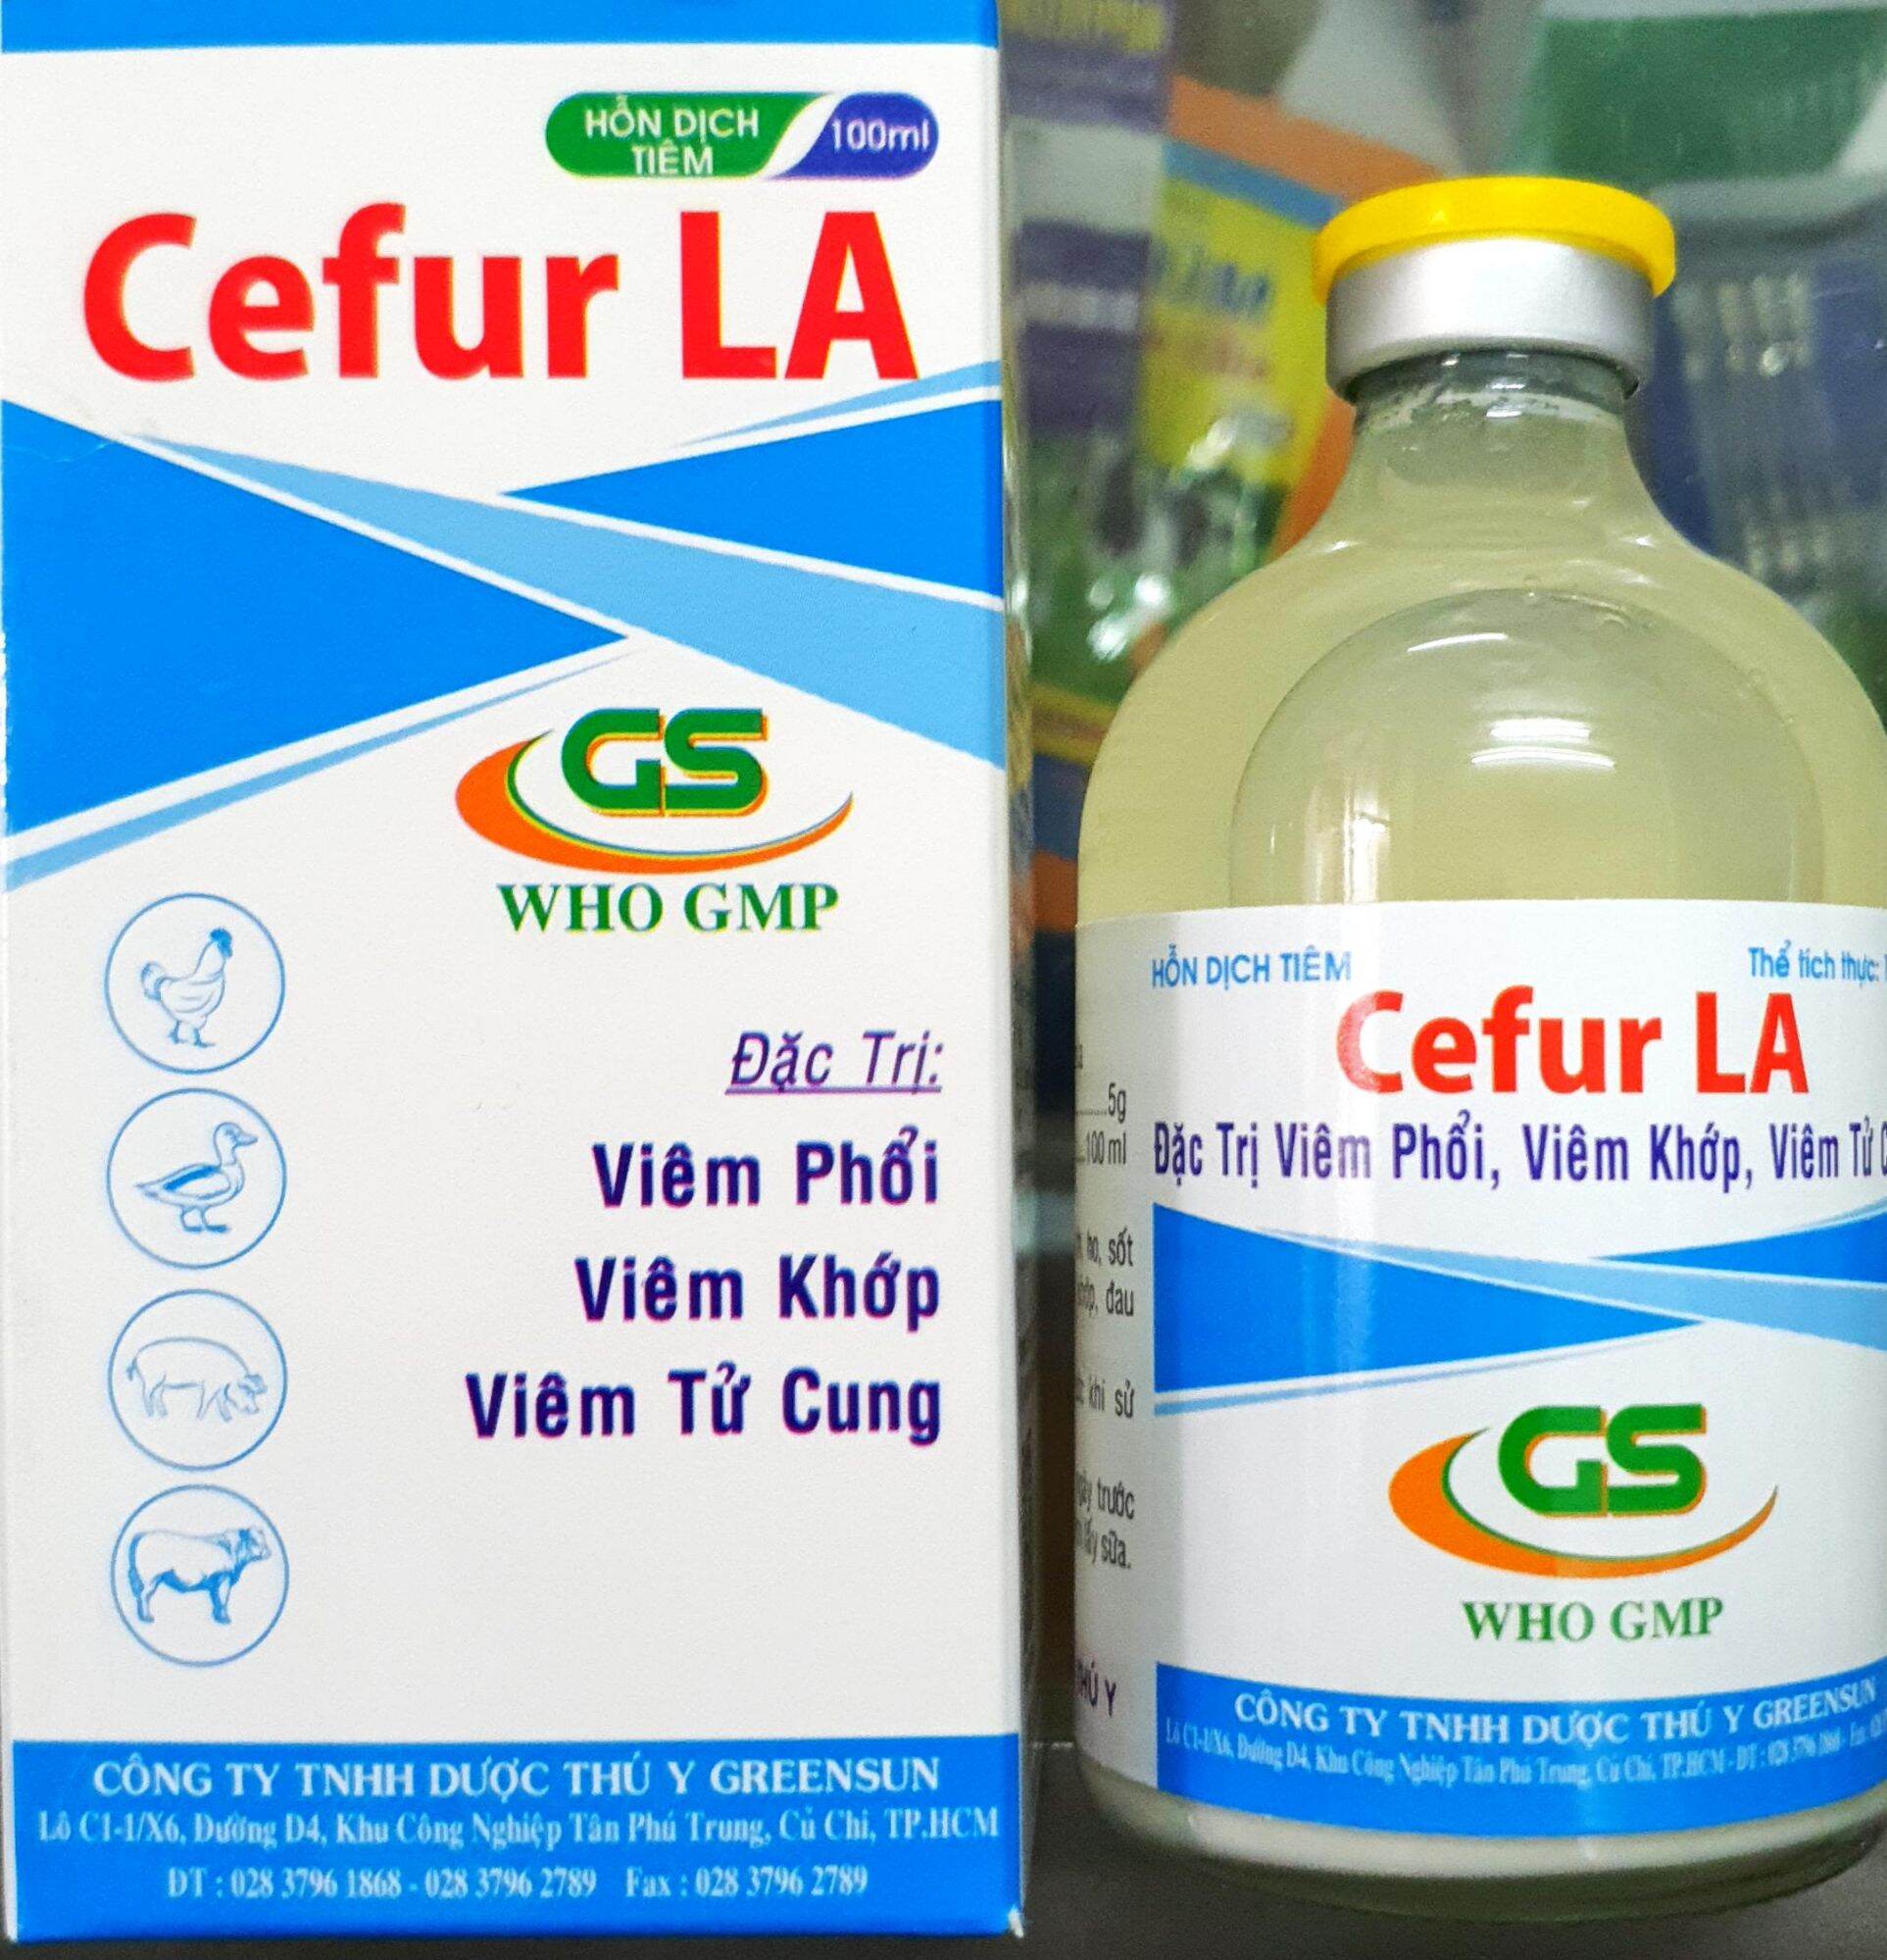 Cefur LA (100ml) - Ceftiofur tác dụng kéo dài, đặc trị viêm phổi, sốt đỏ, sưng phù đầu cho gà đá